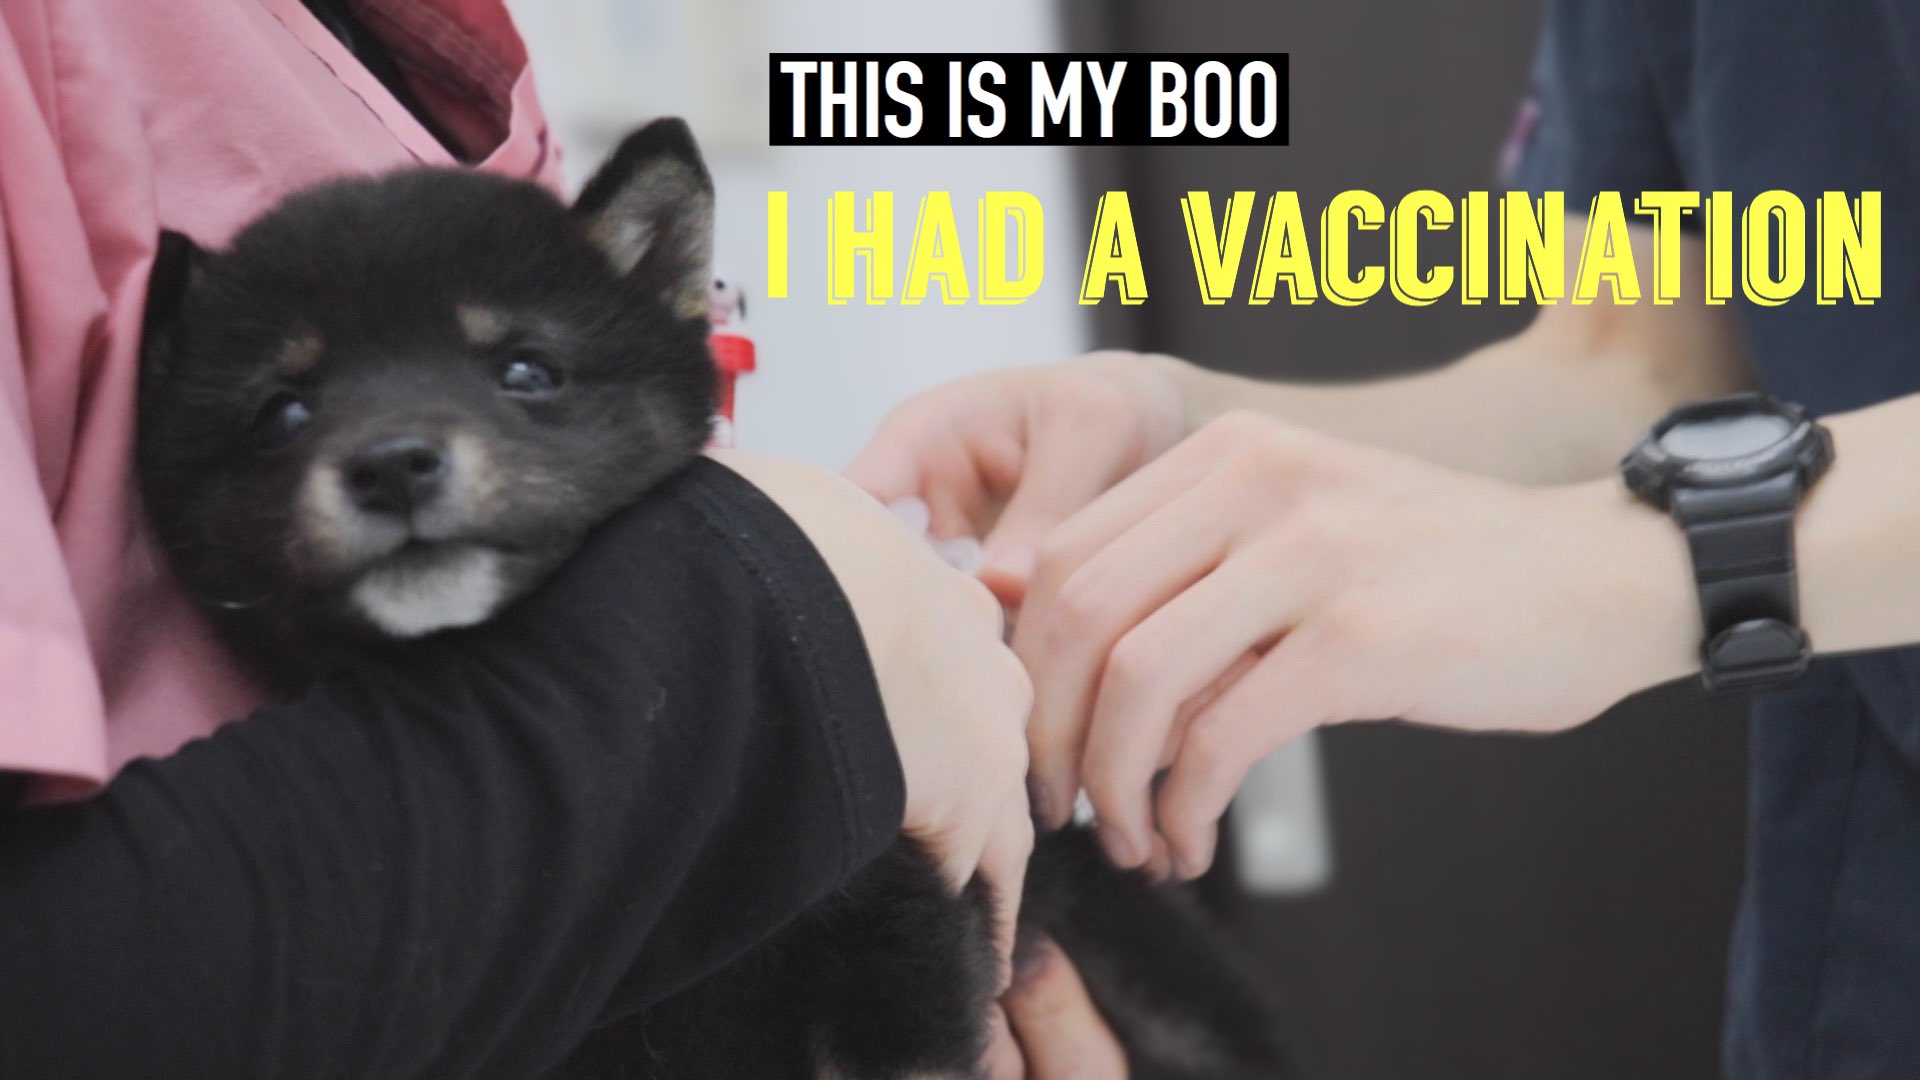 This Is My Boo Youtube ぶぅちゃん こんな時もあったね 豆柴 子犬の初めての注射で泣き叫ぶ ワクチン接種 I Had A Vaccination T Co Jcux7xscvv 豆柴 フレブル 子犬 かわいい ぶぅとぼくの姉妹日記 Vlog いぬのいる暮らし